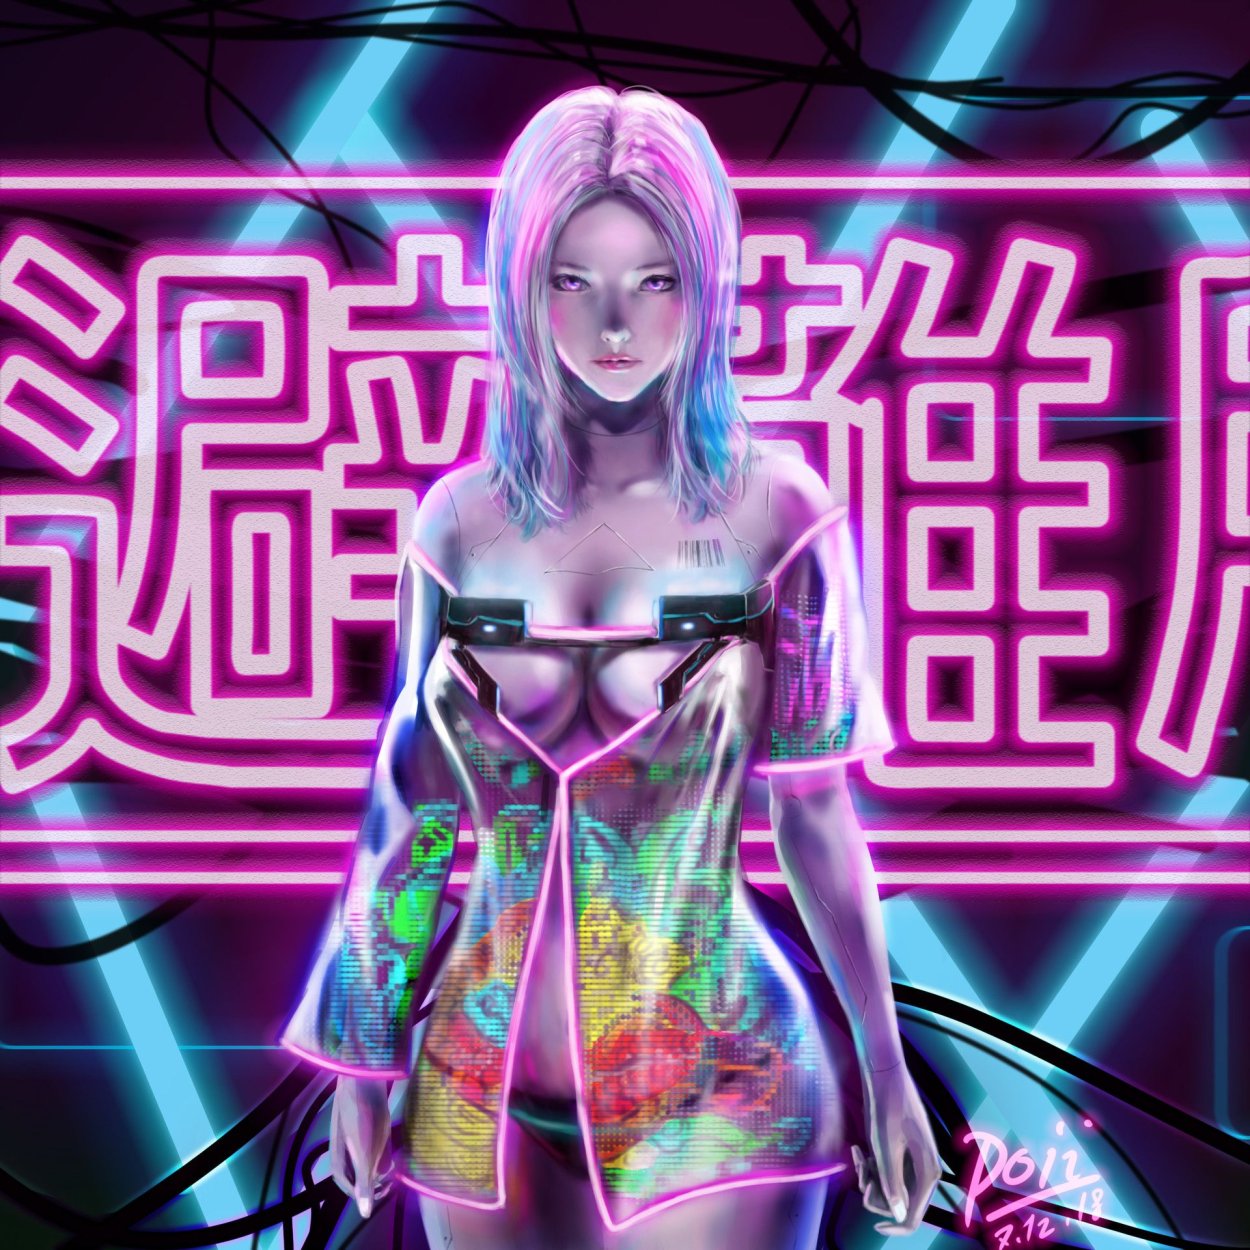 Cyberpunk girl anime art фото 33